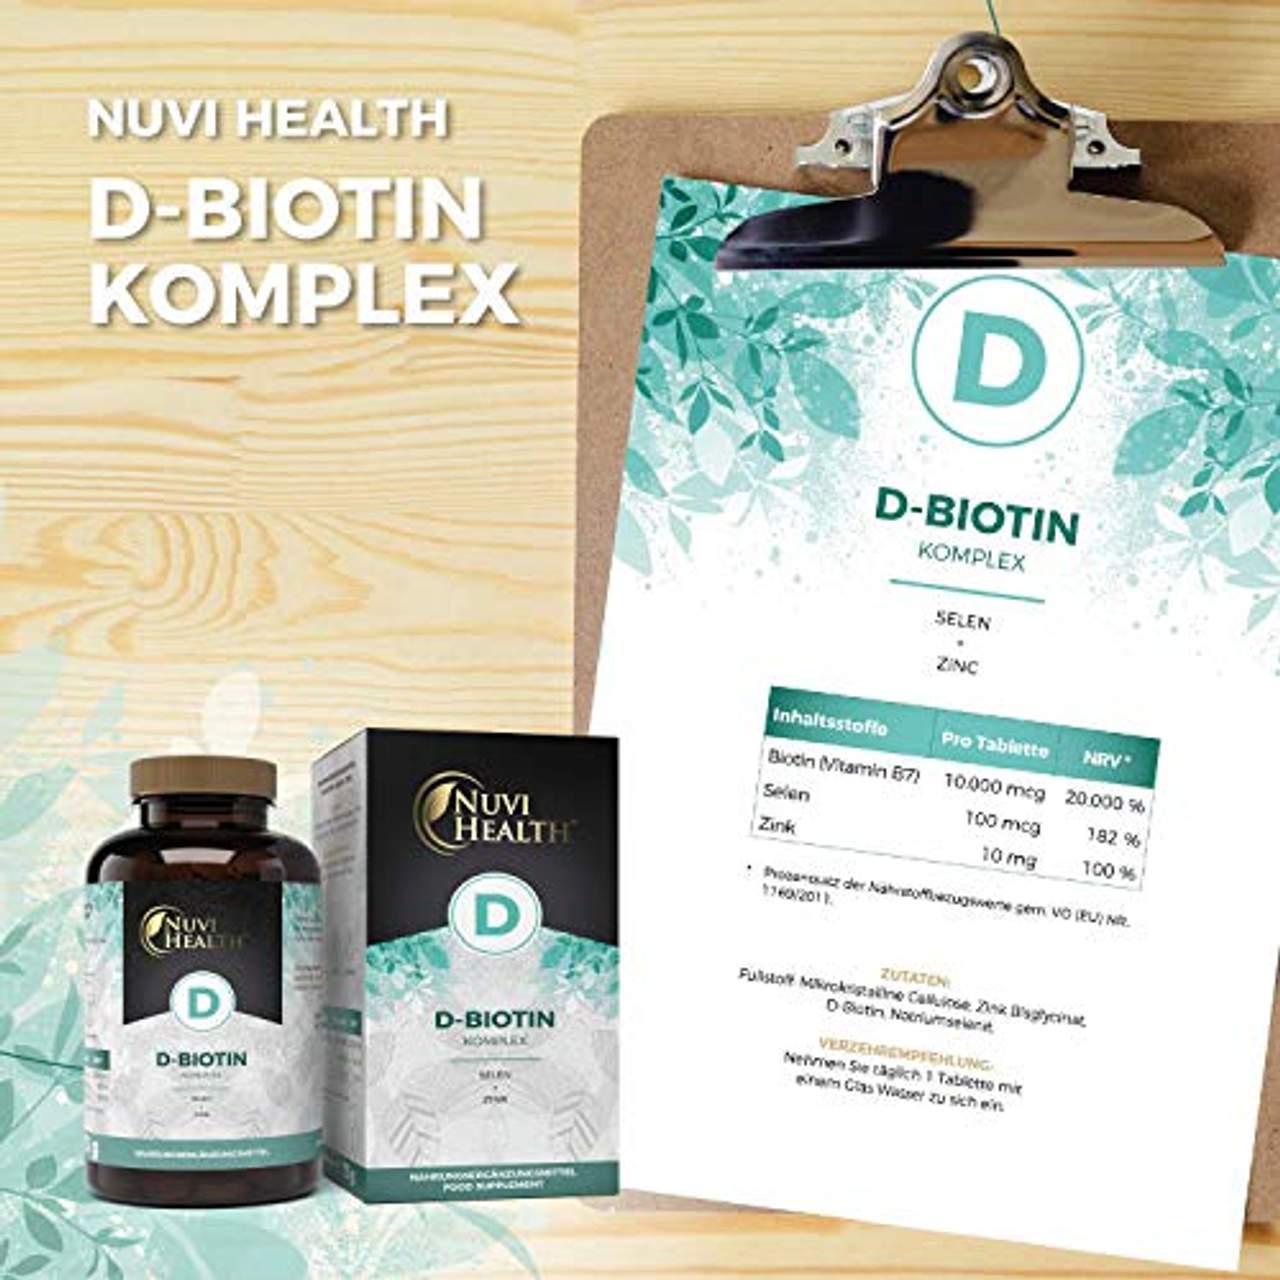 Nuvi Health Biotin